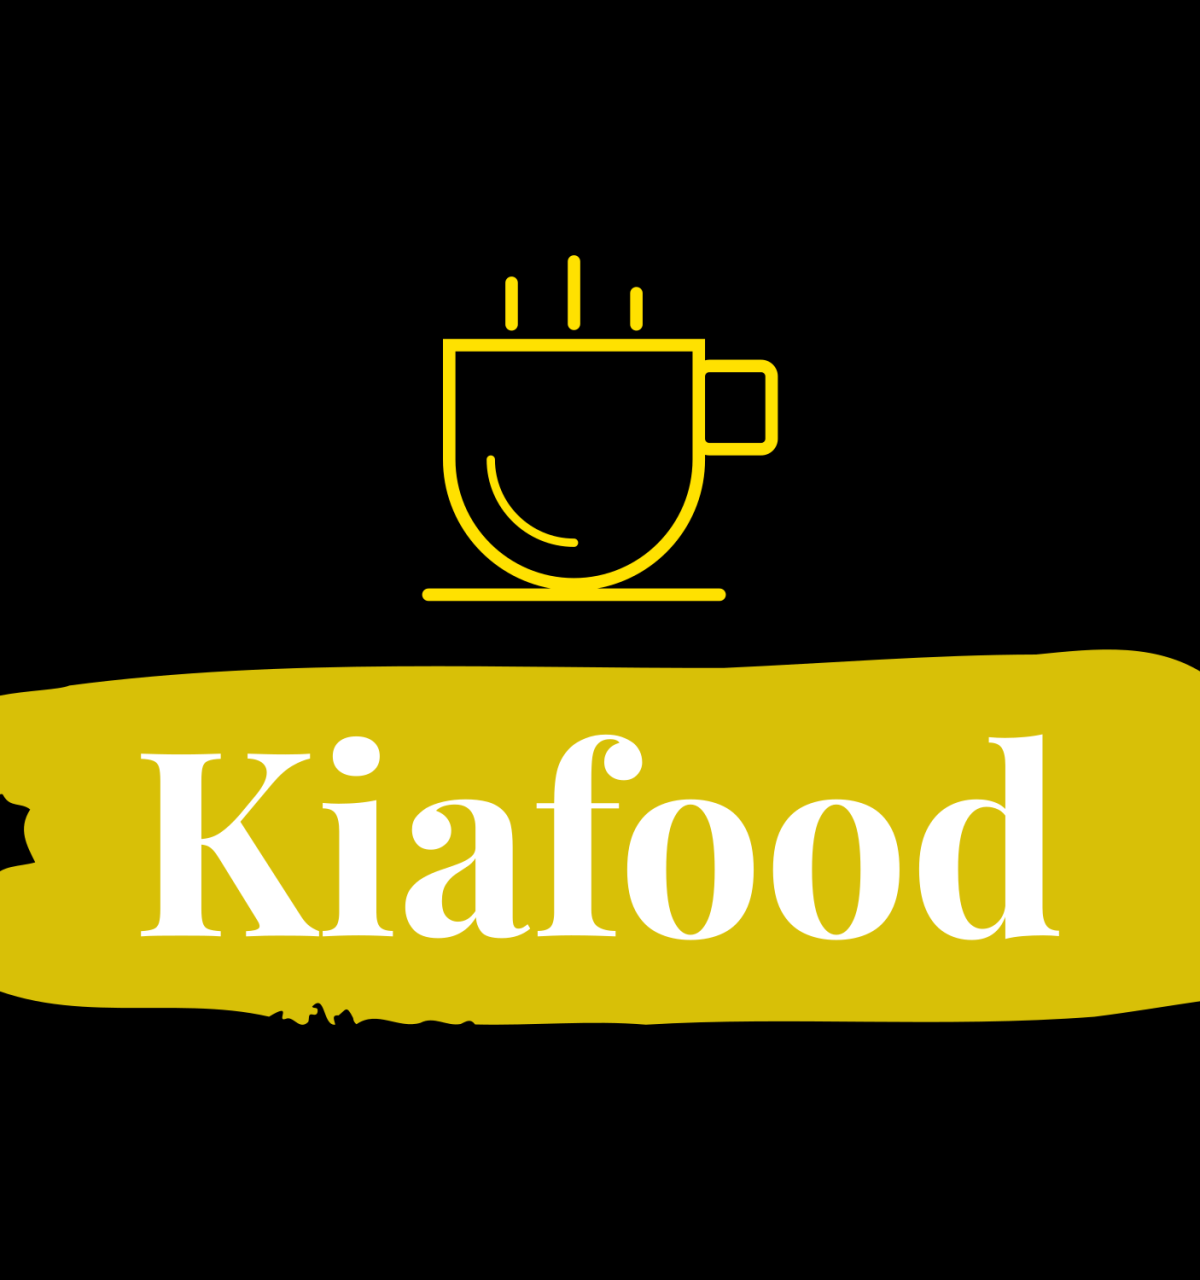 kiafood-high-resolution-logo